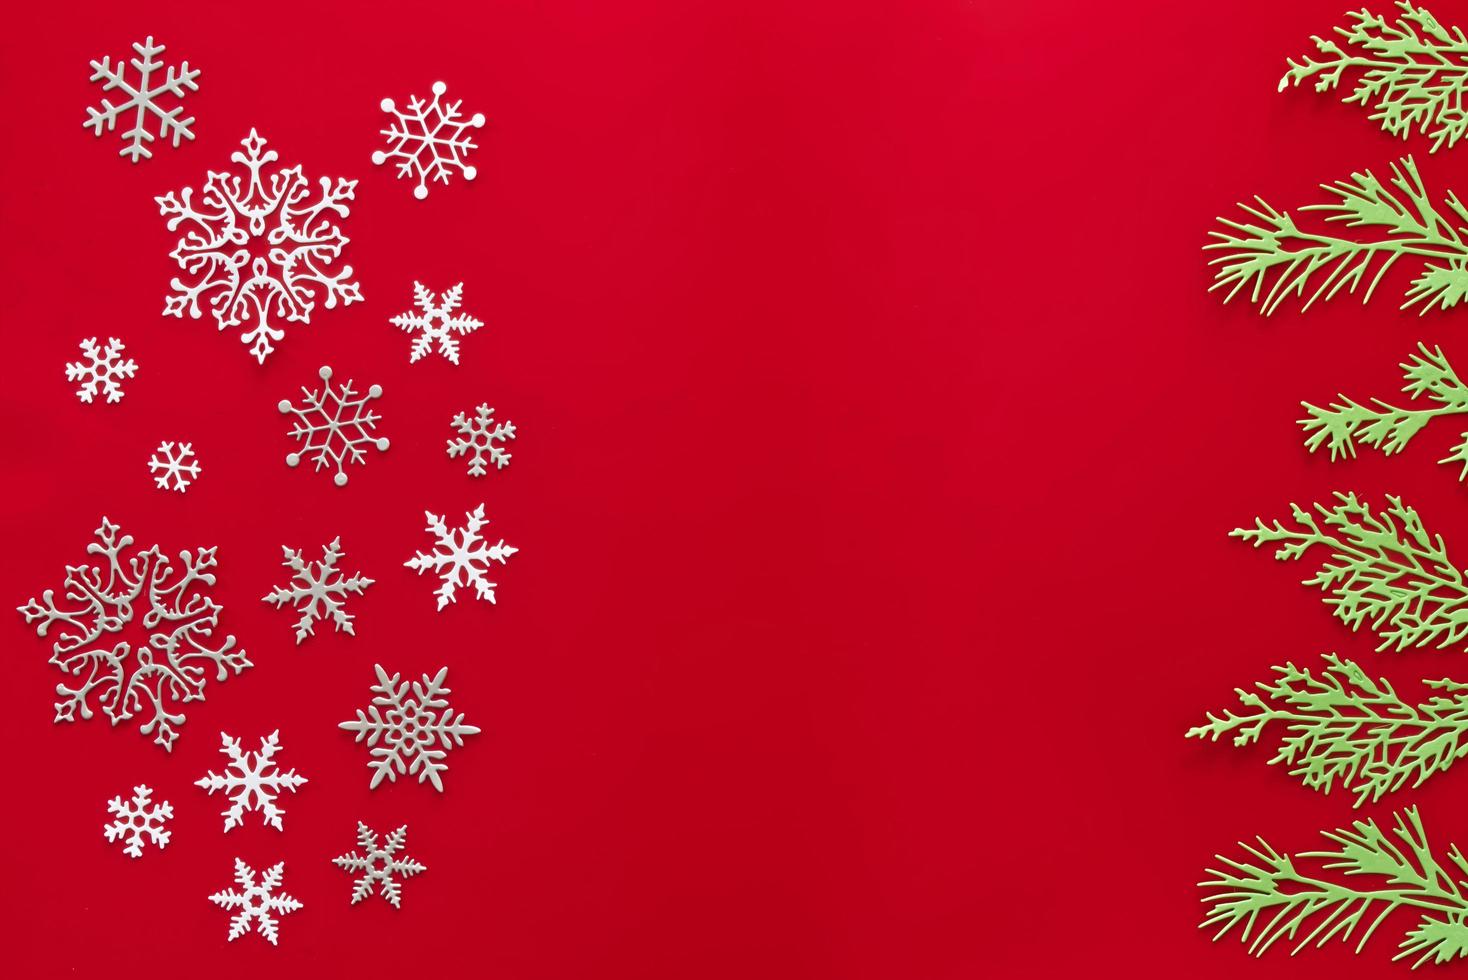 Schneeroter Hintergrund. hintergrund mit schneeflocke, weihnachtsfeierkonzept. flach liegen foto